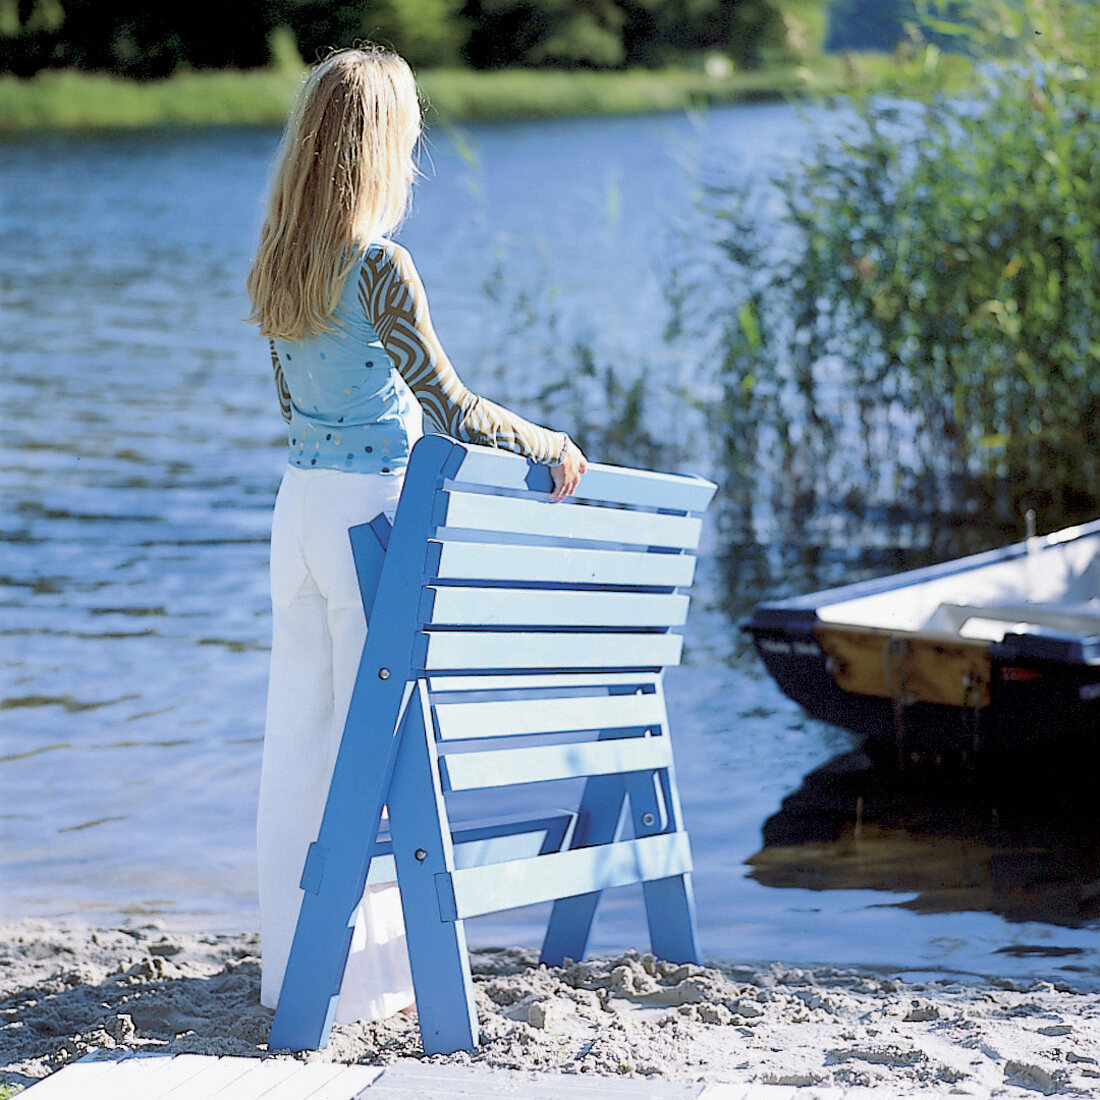 Mädchen, Kind, langes blondes Haar, am See mit Klappliege in blau